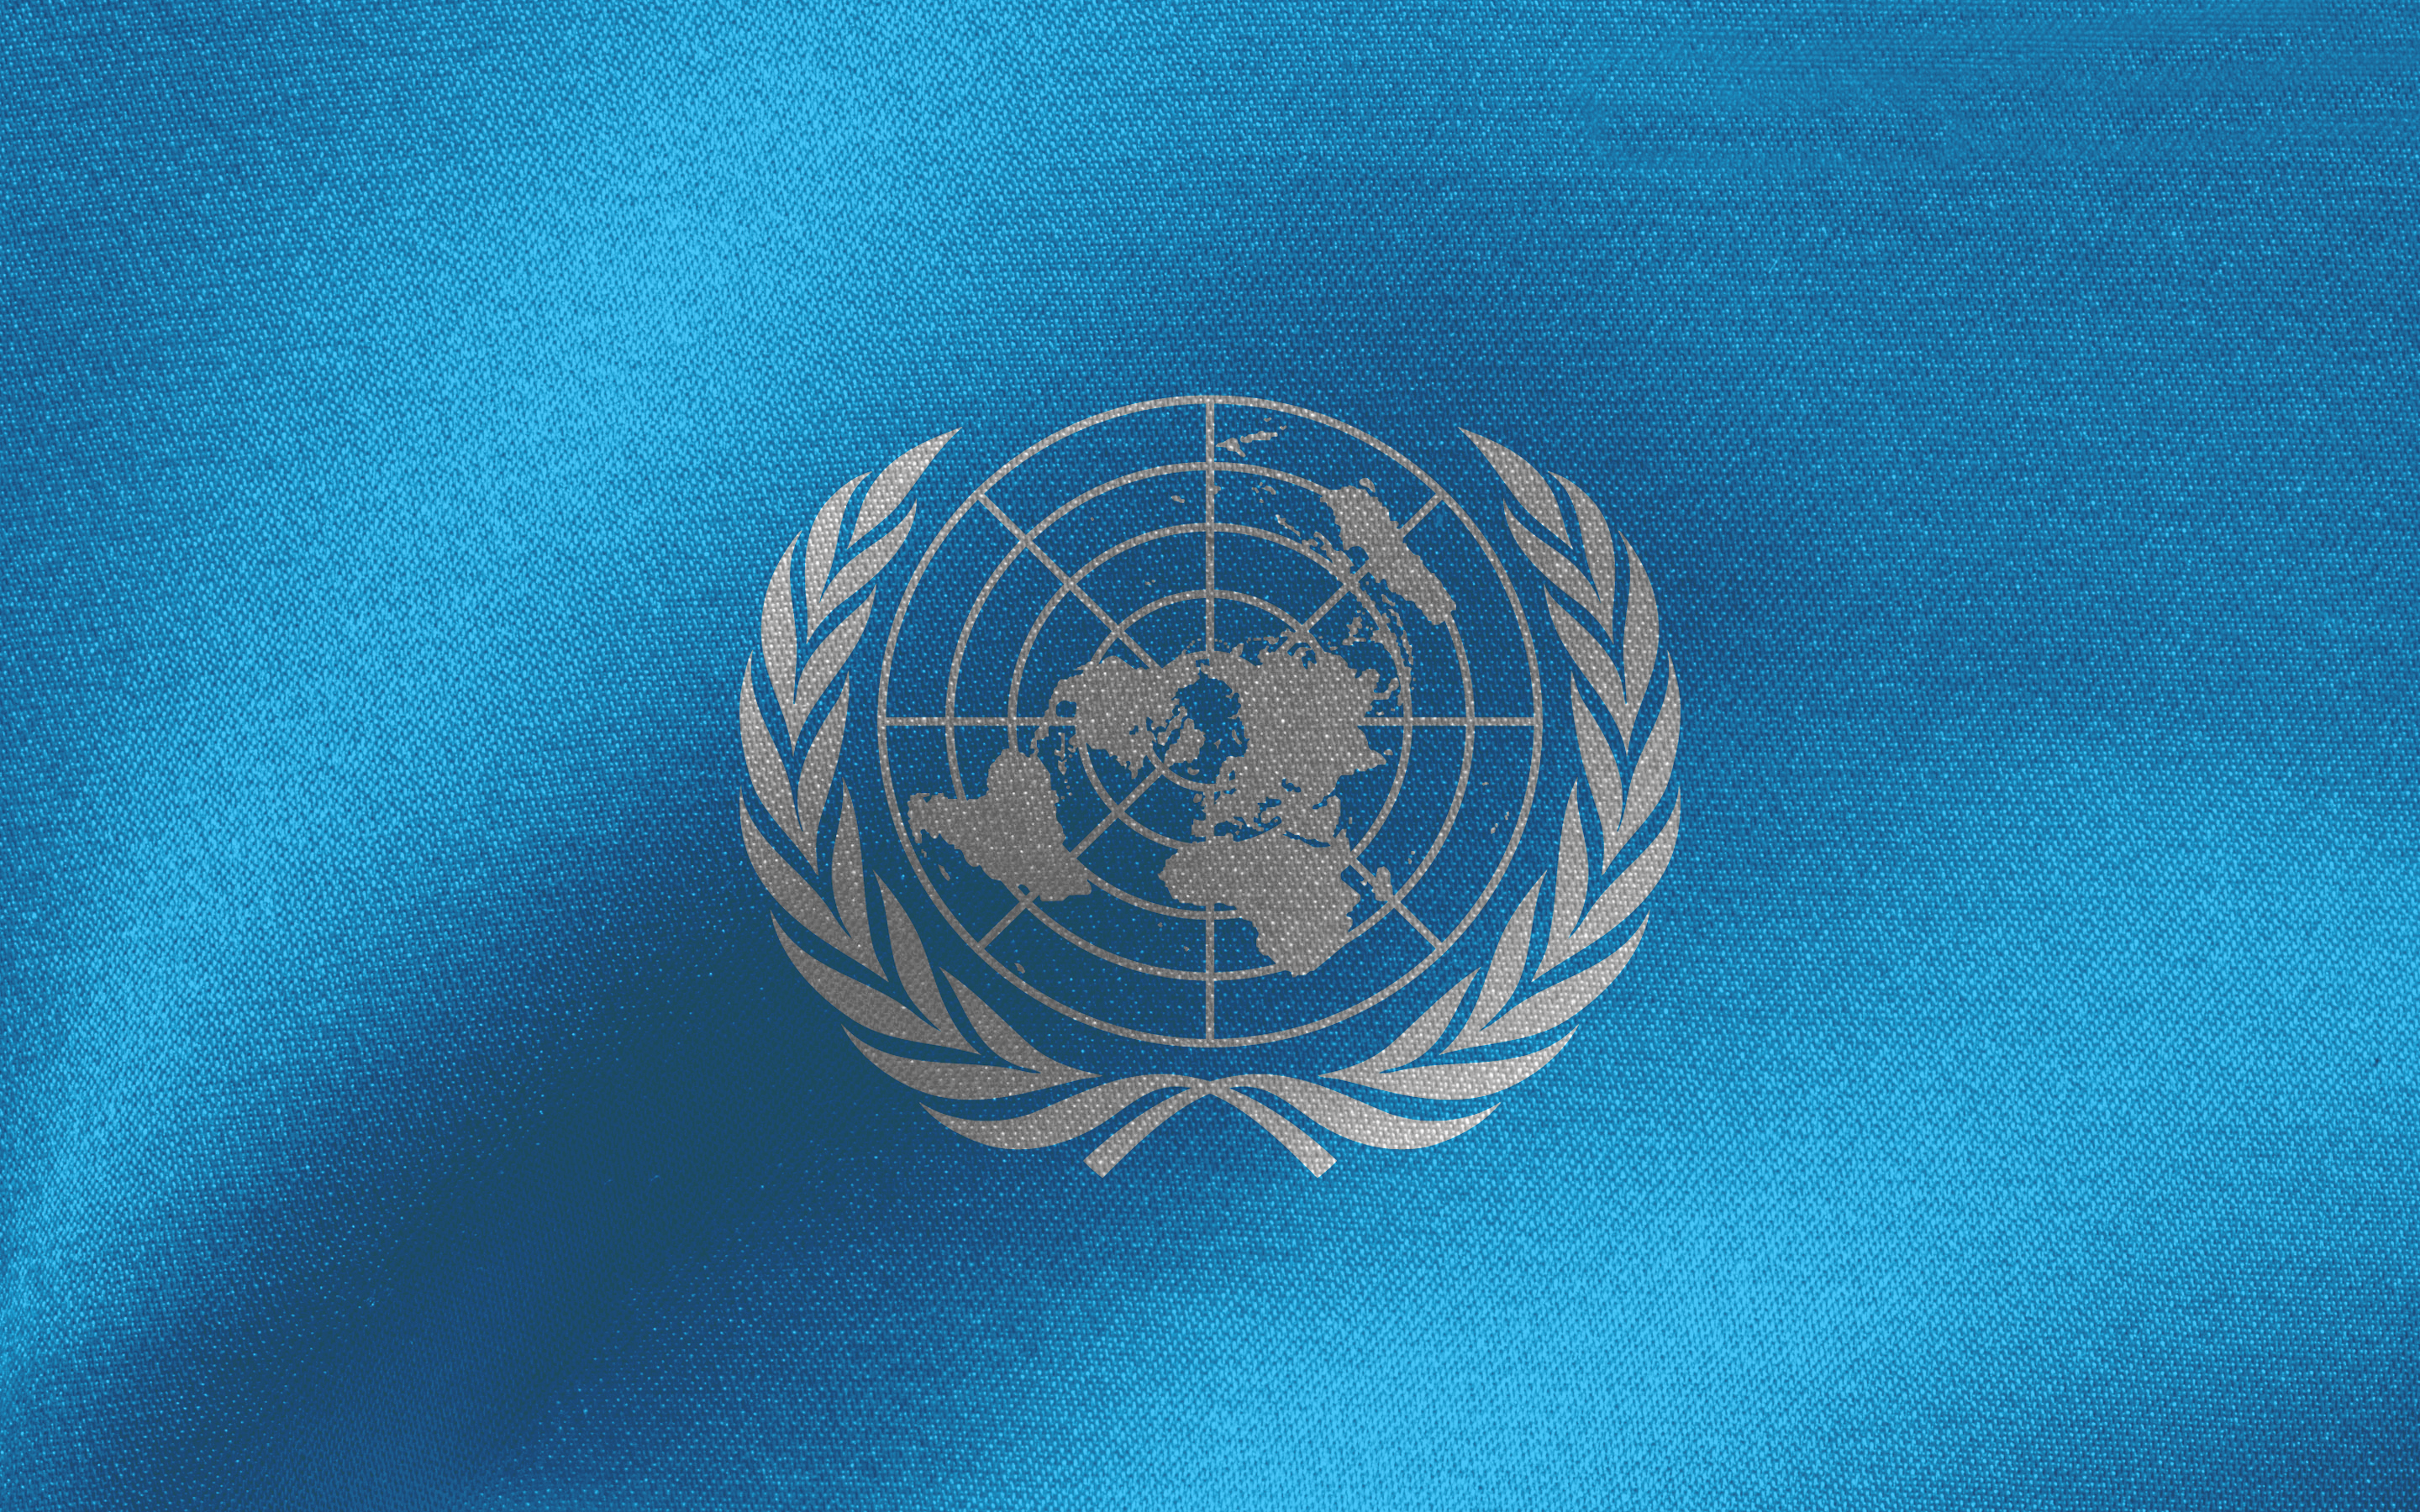 Экономические комиссии оон. Европейская экономическая комиссия ООН (ЕЭК ООН). Флаг ООН. Флаг организации Объединенных наций. Логотип ООН.